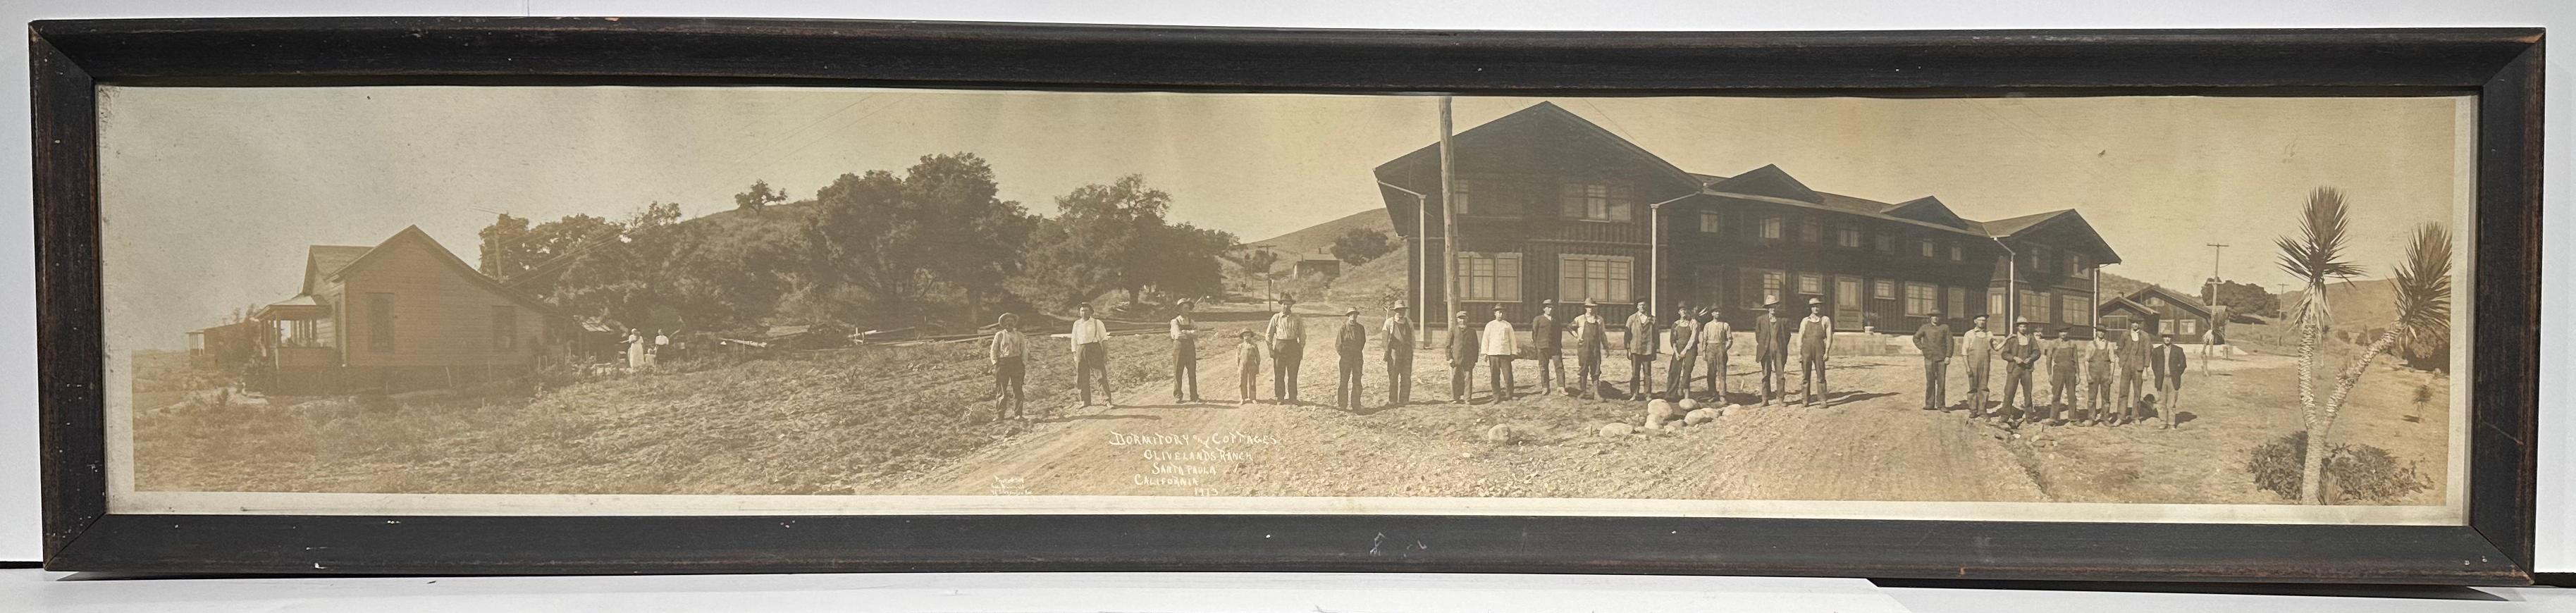 Photographie ancienne du ranch Limoneira de Santa Paula CA, en olivelands, 1913